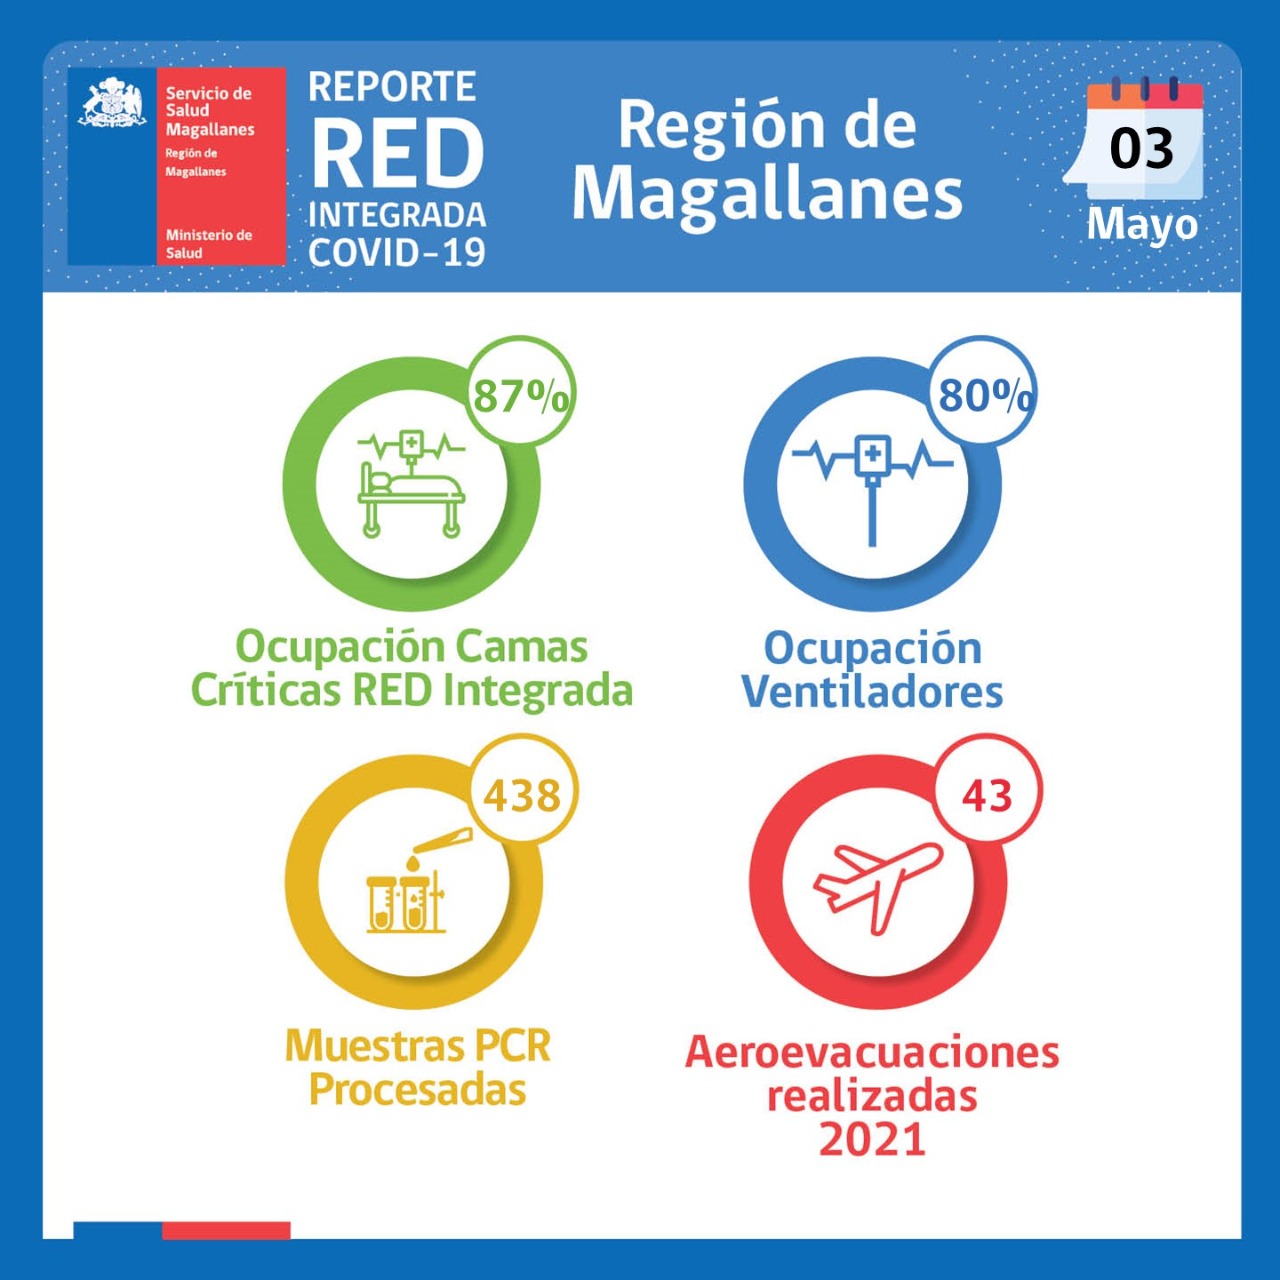 Estado de la red integrada Covid19 en Magallanes este lunes 3 de mayo